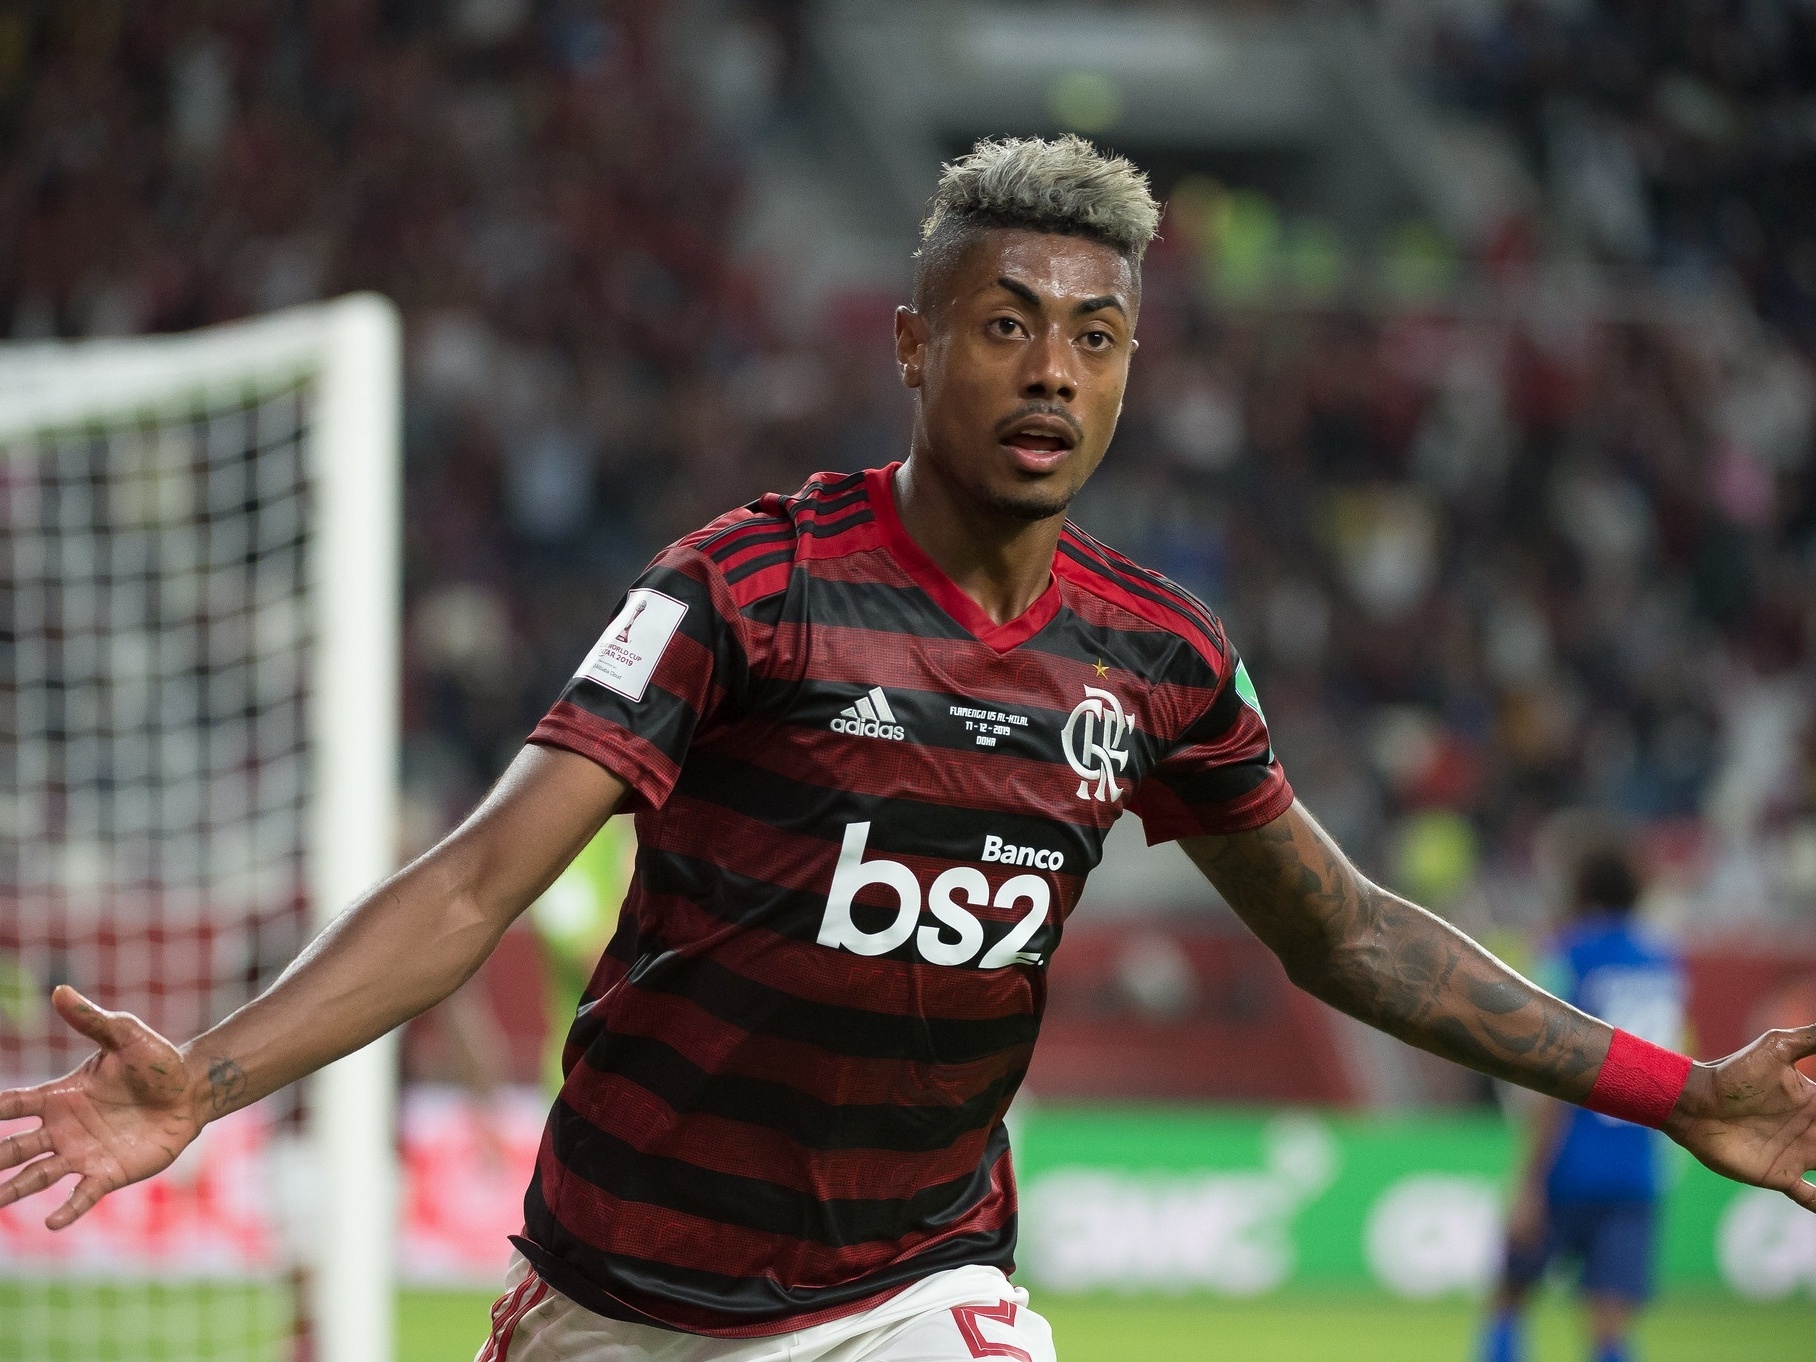 Adversário do Flamengo em 2019, Al-Hilal se classifica para o Mundial